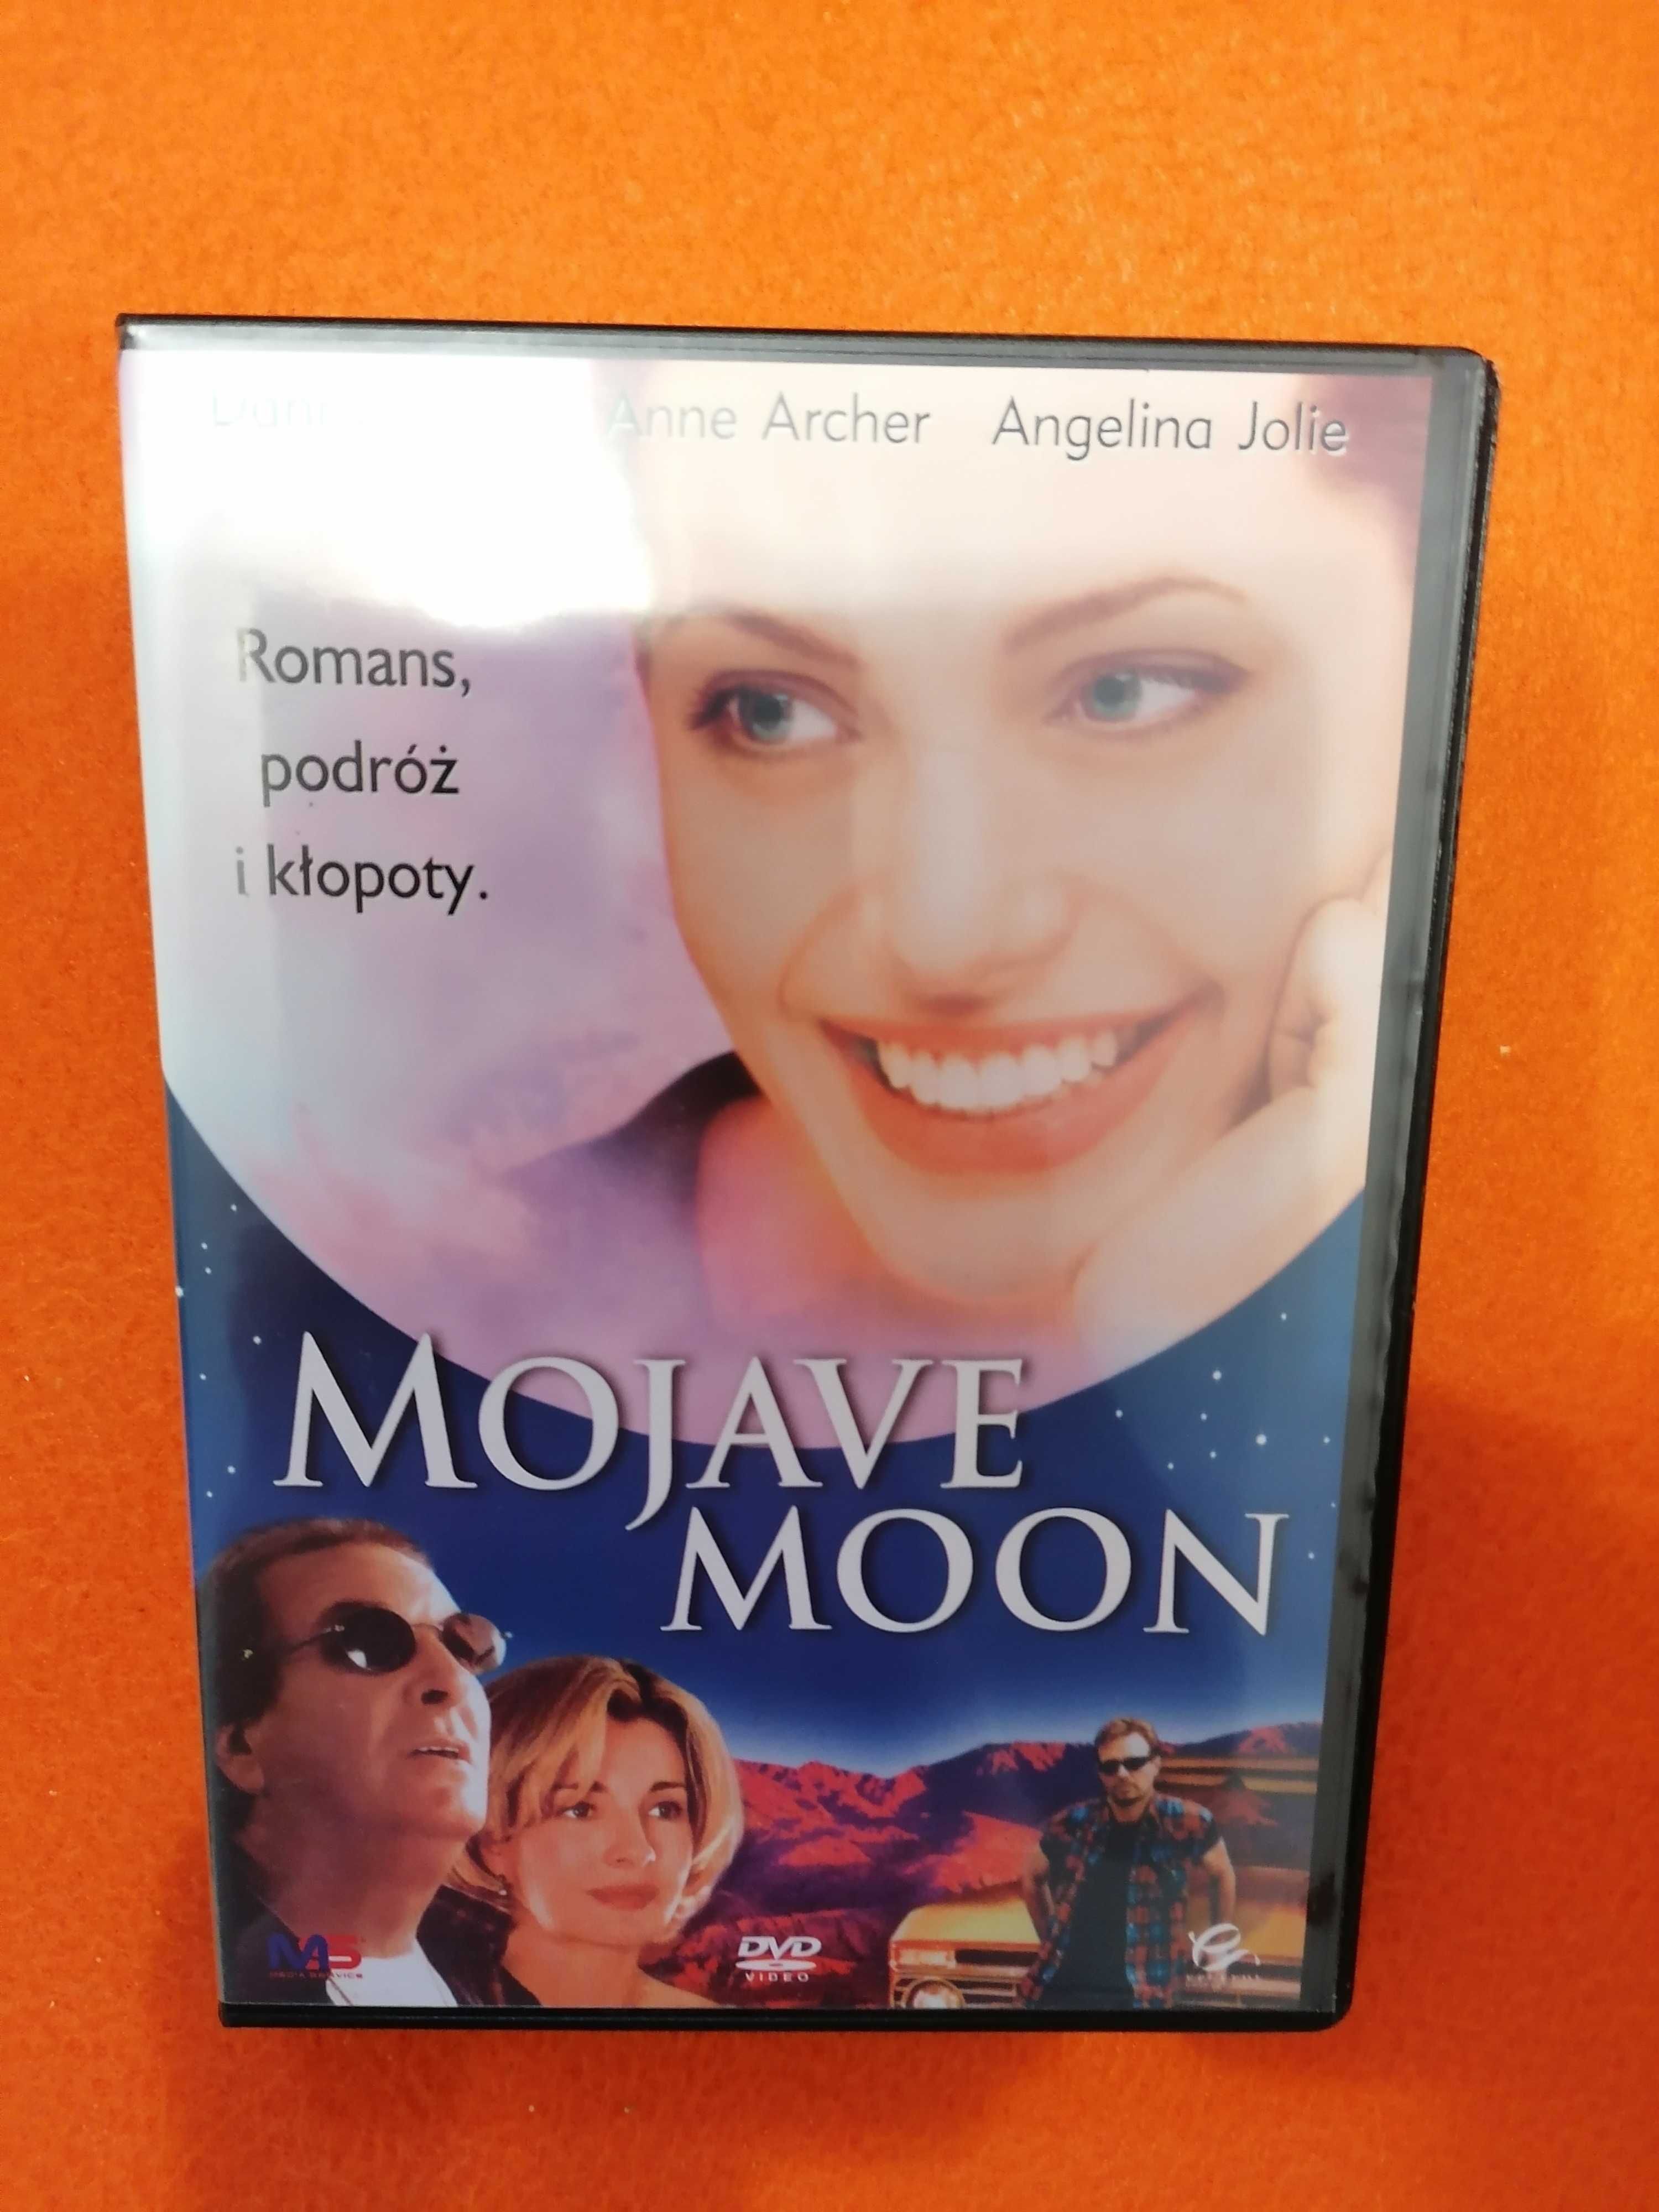 Film "Mojave moon"